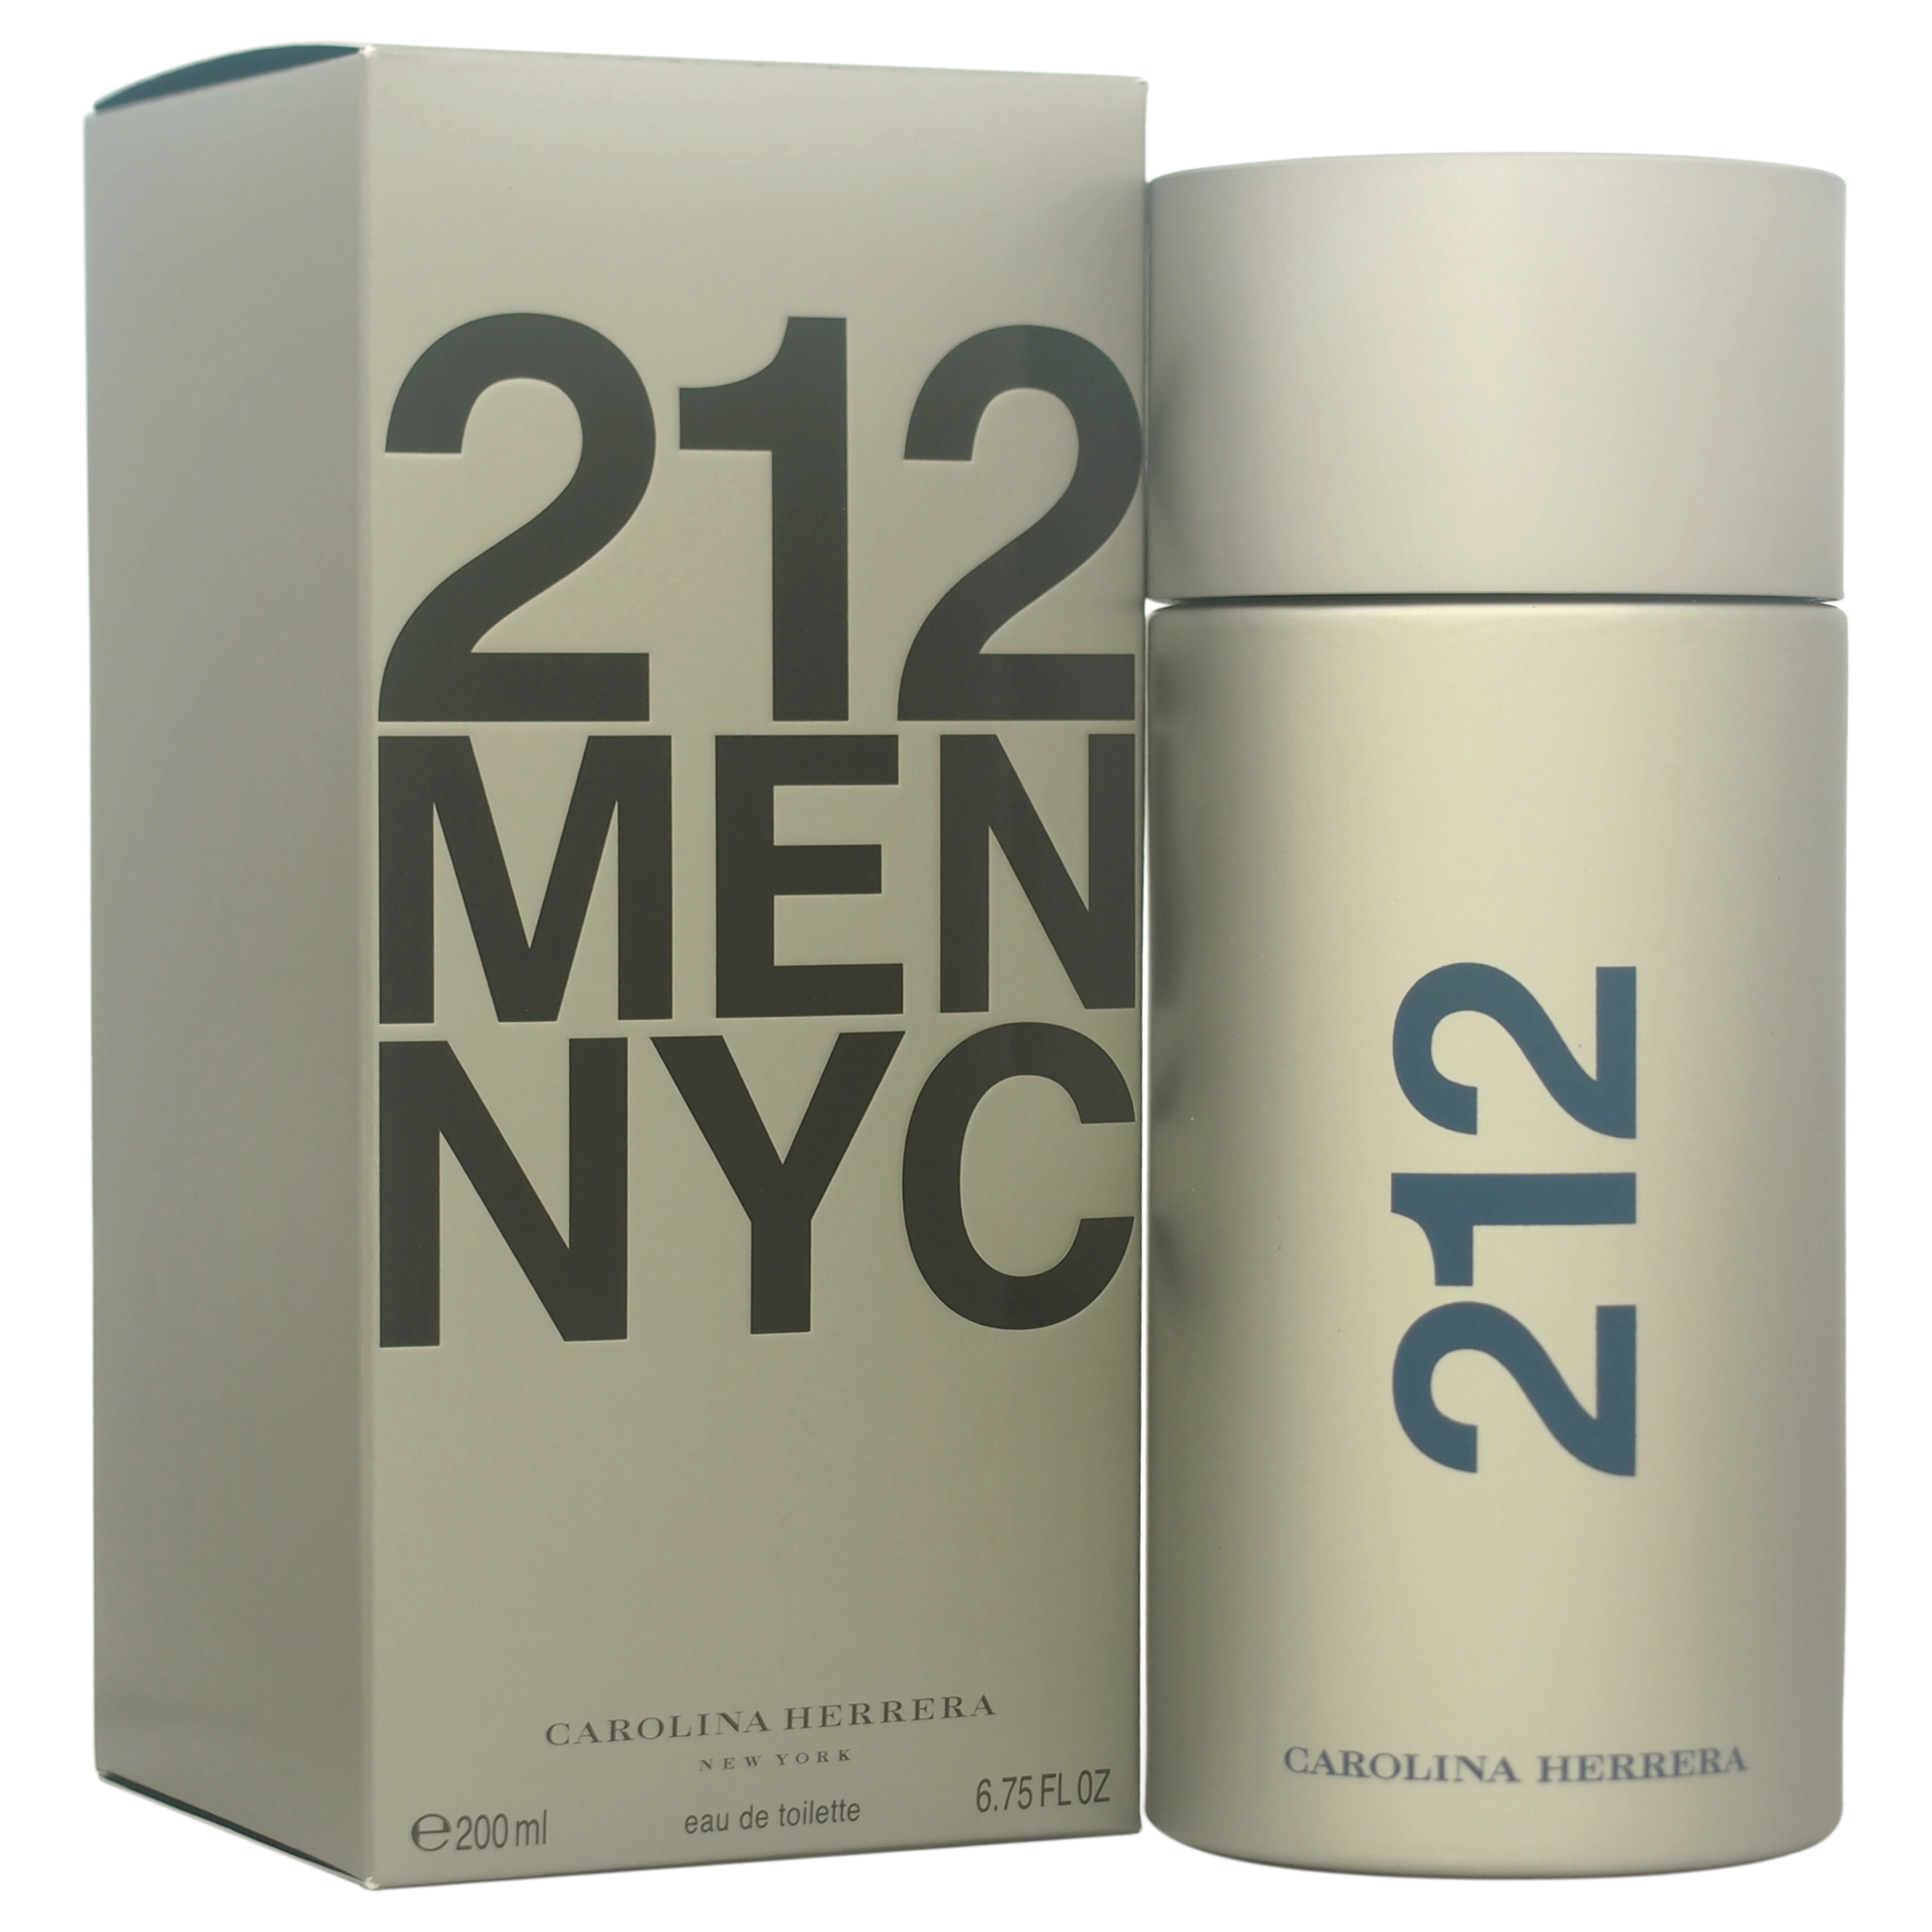 212 Men Nyc by Carolina Herrera for Men - 6.75 oz EDT Spray